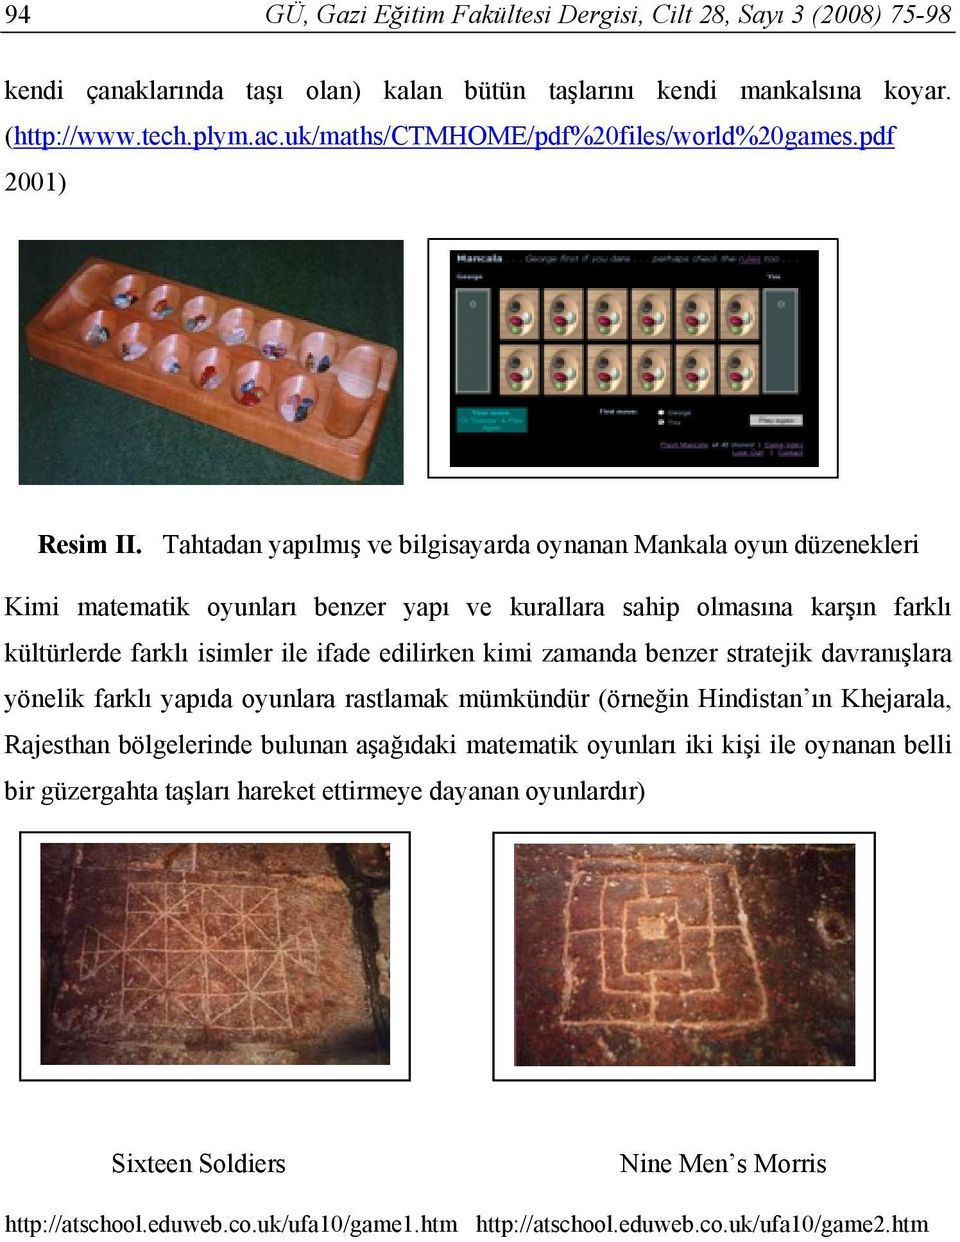 Tahtadan yapılmış ve bilgisayarda oynanan Mankala oyun düzenekleri Kimi matematik oyunları benzer yapı ve kurallara sahip olmasına karşın farklı kültürlerde farklı isimler ile ifade edilirken kimi